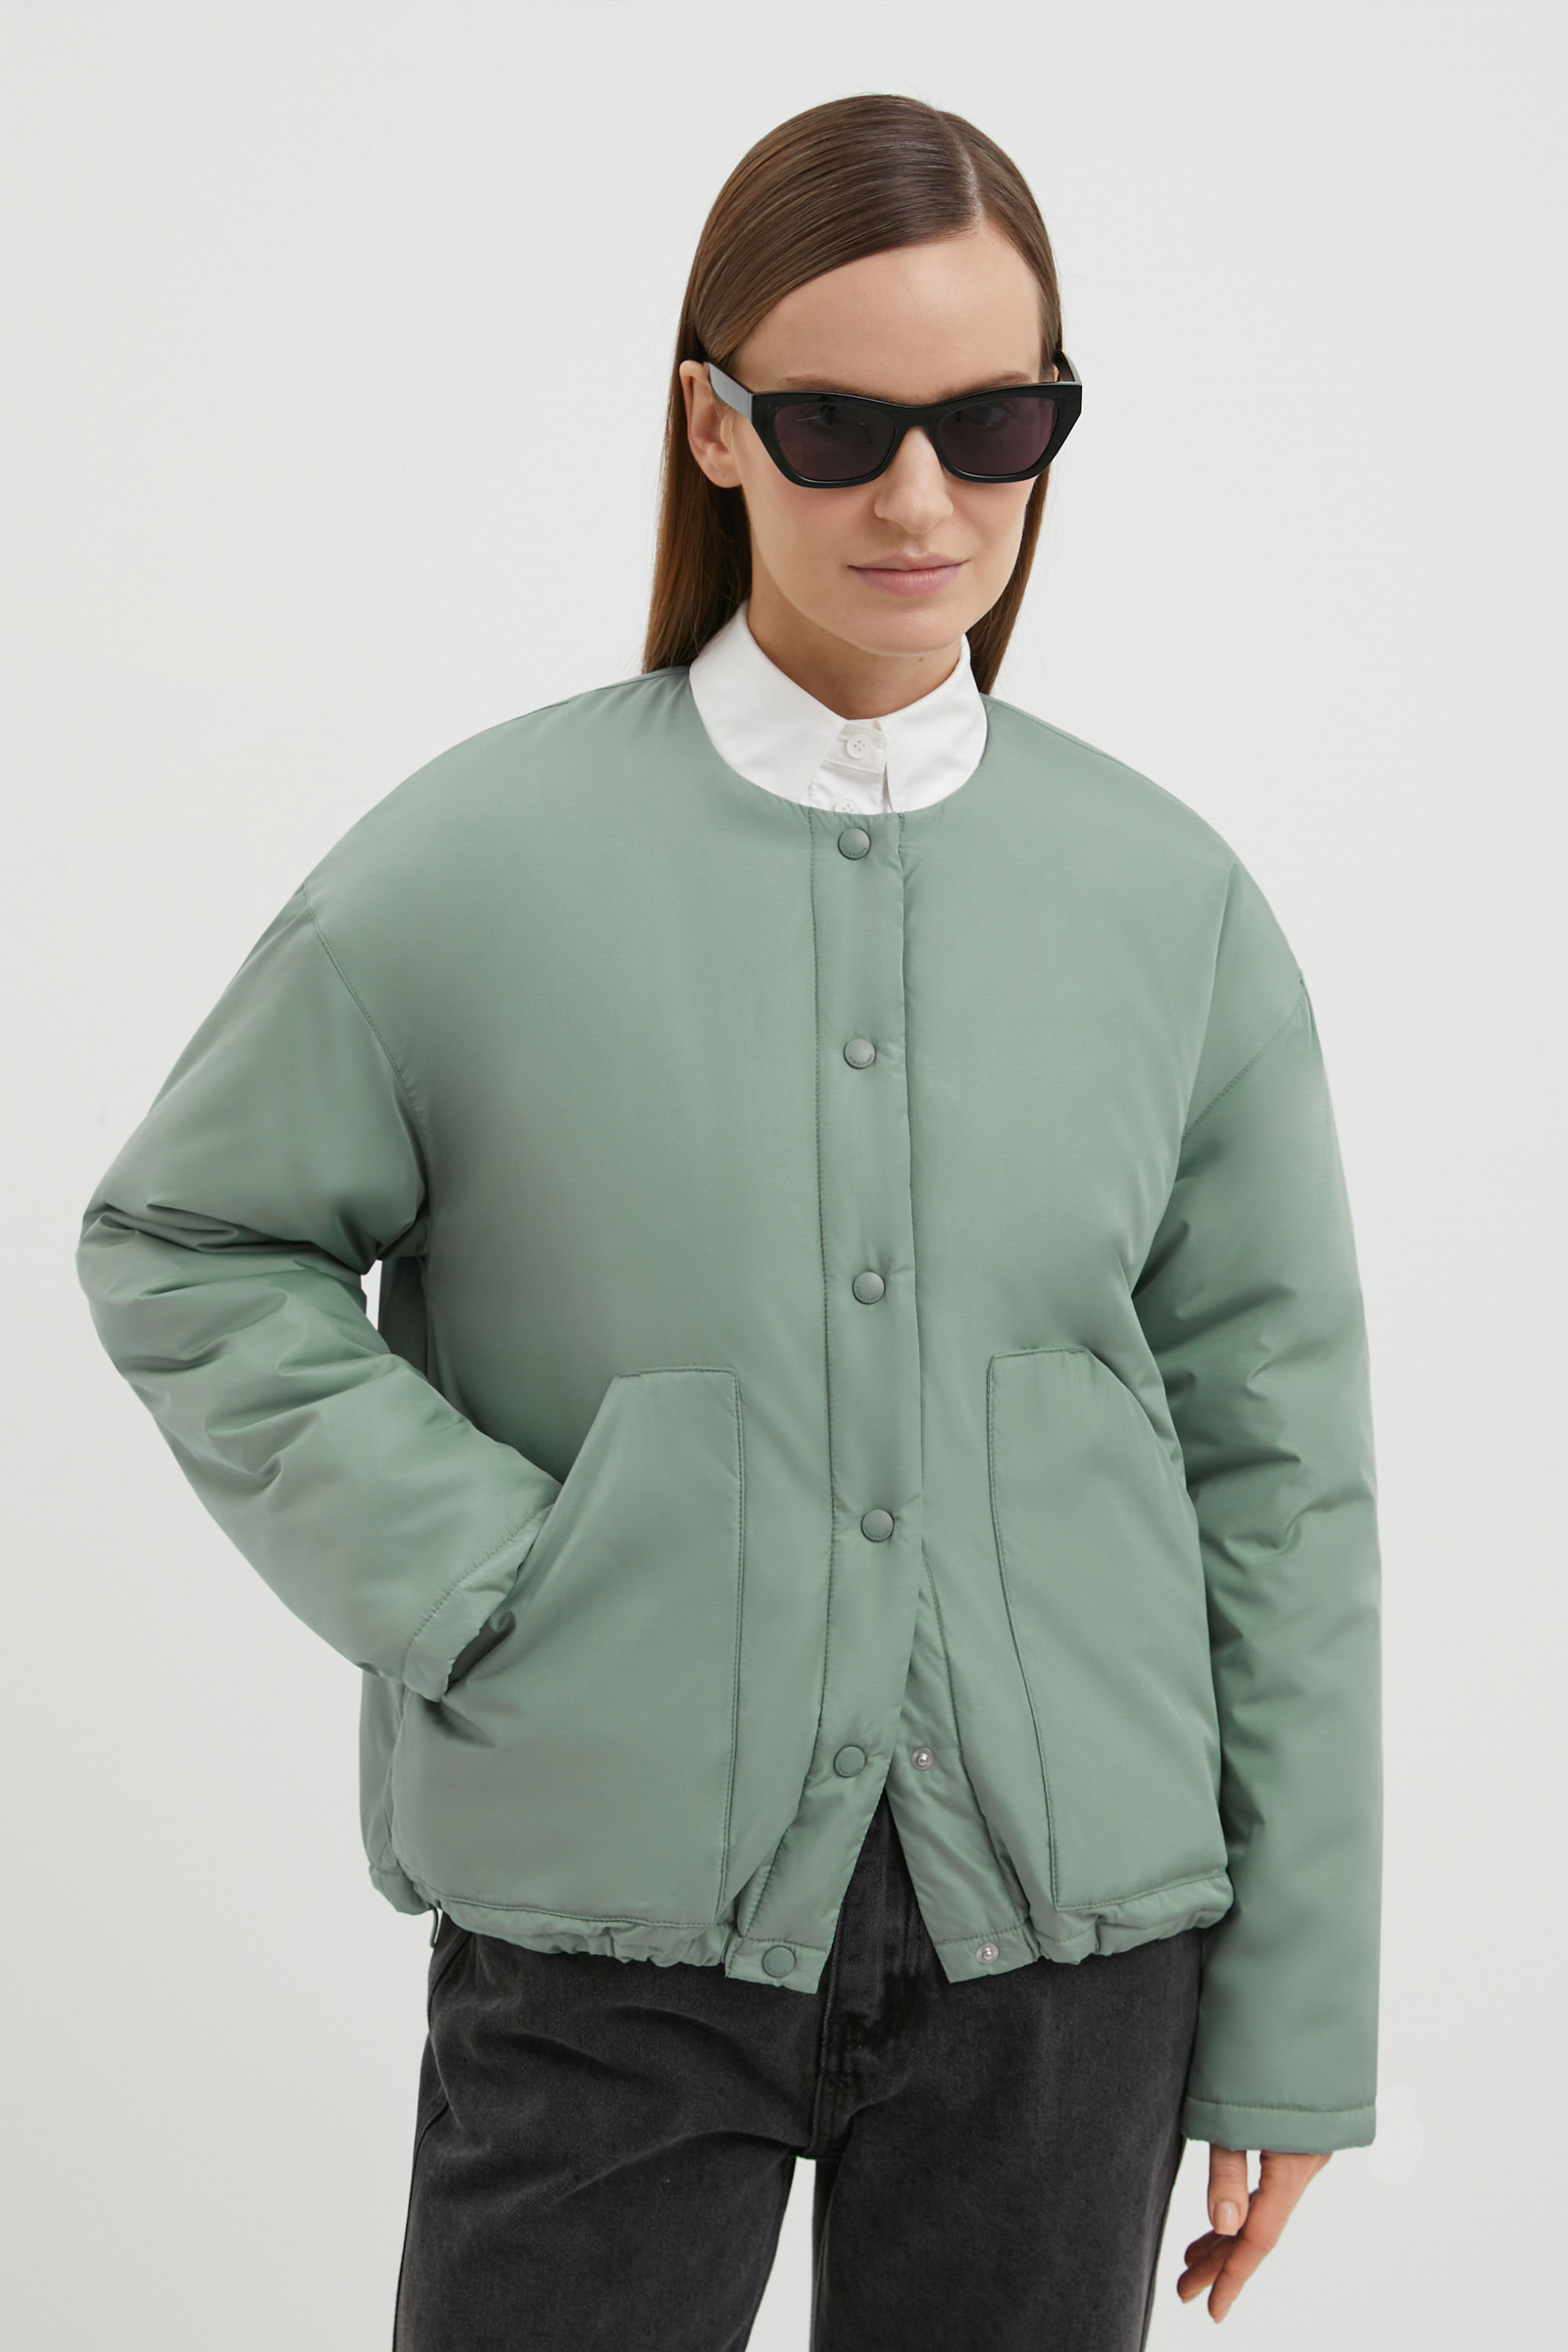 Куртка женская Finn Flare FBE11086 зеленая L